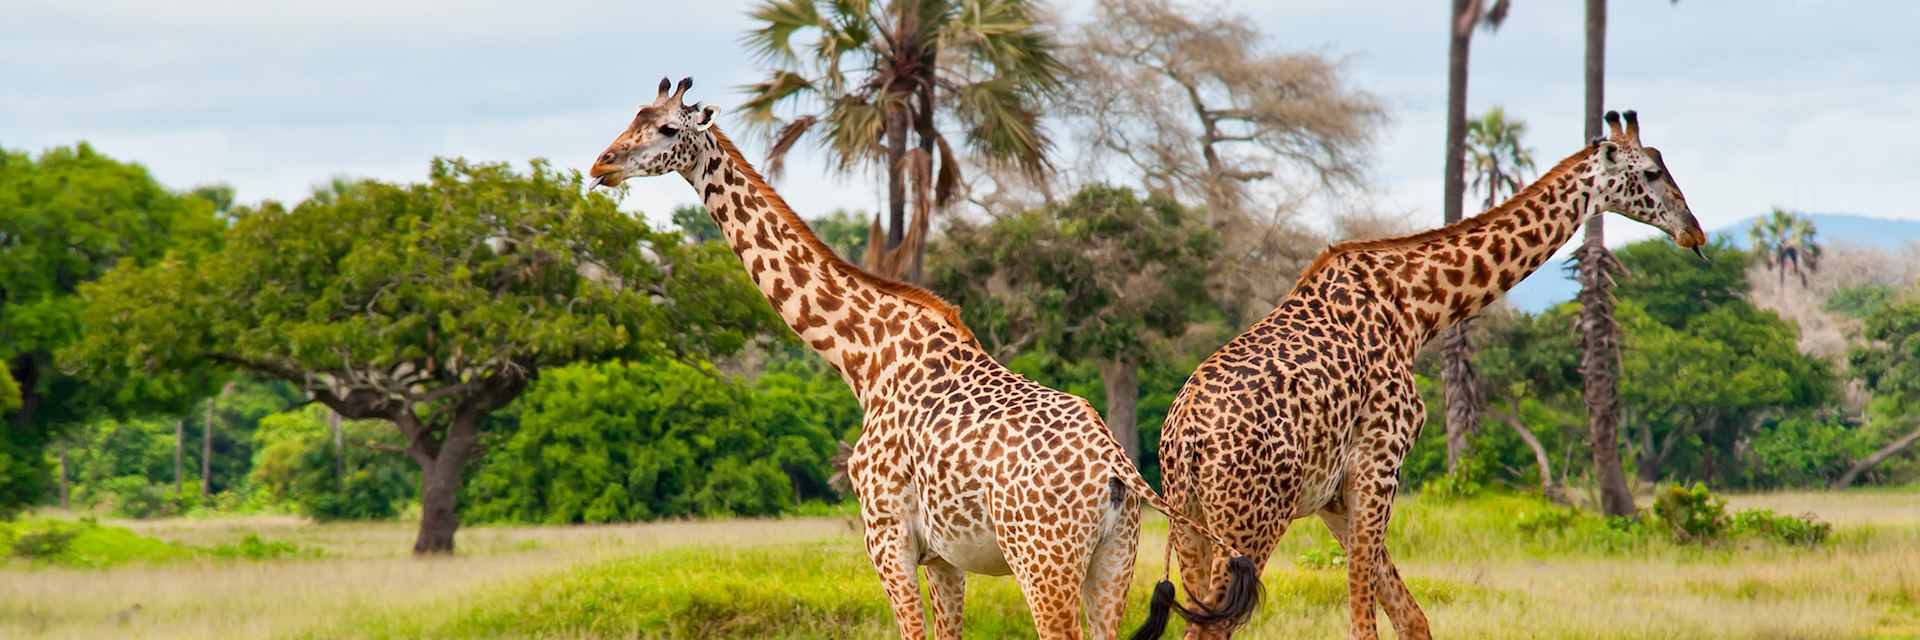 Giraffes in Katavi Naitonal Park